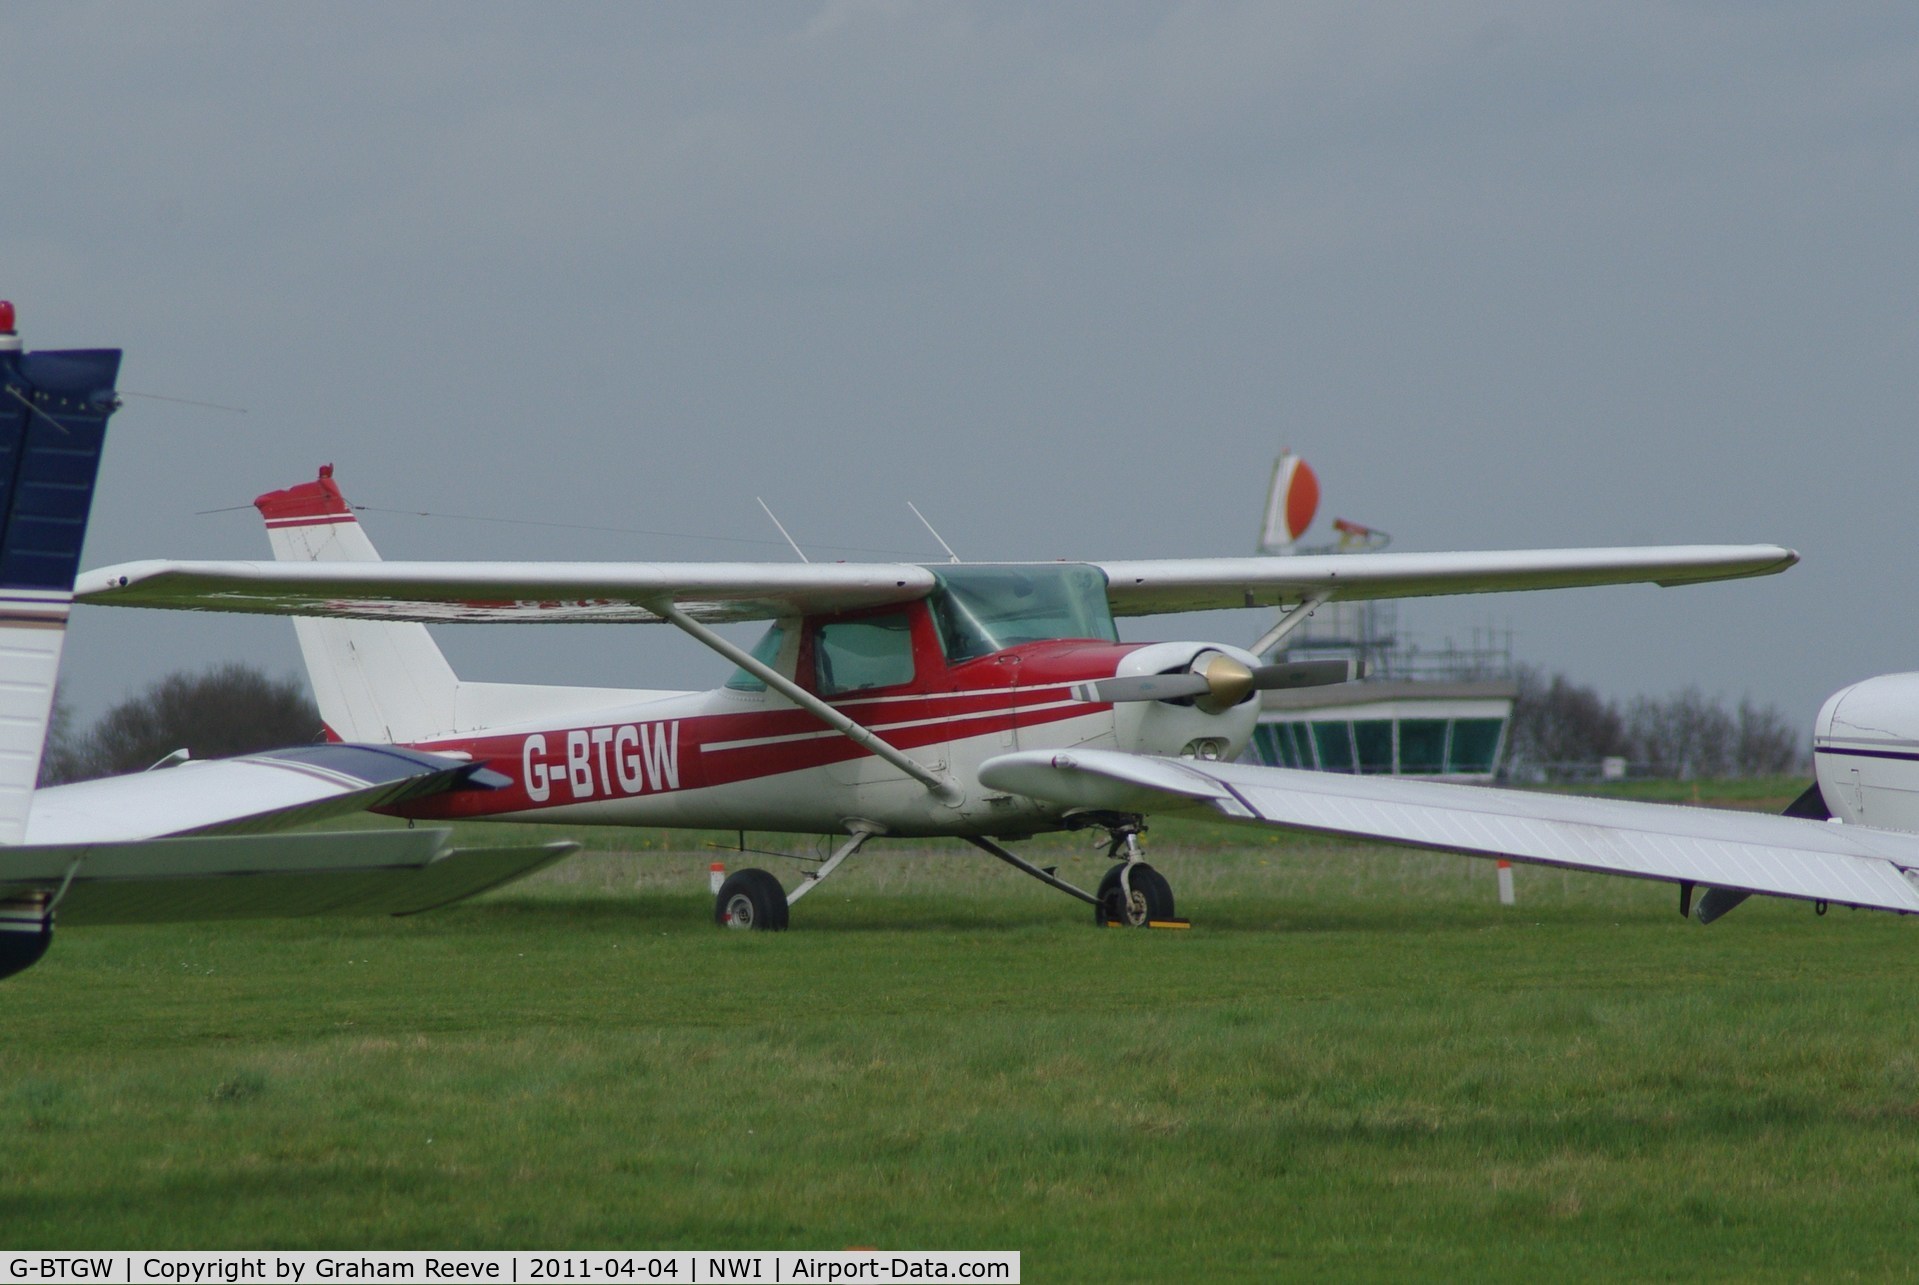 G-BTGW, 1979 Cessna 152 C/N 15279812, Hidden amongst other parked aircraft.